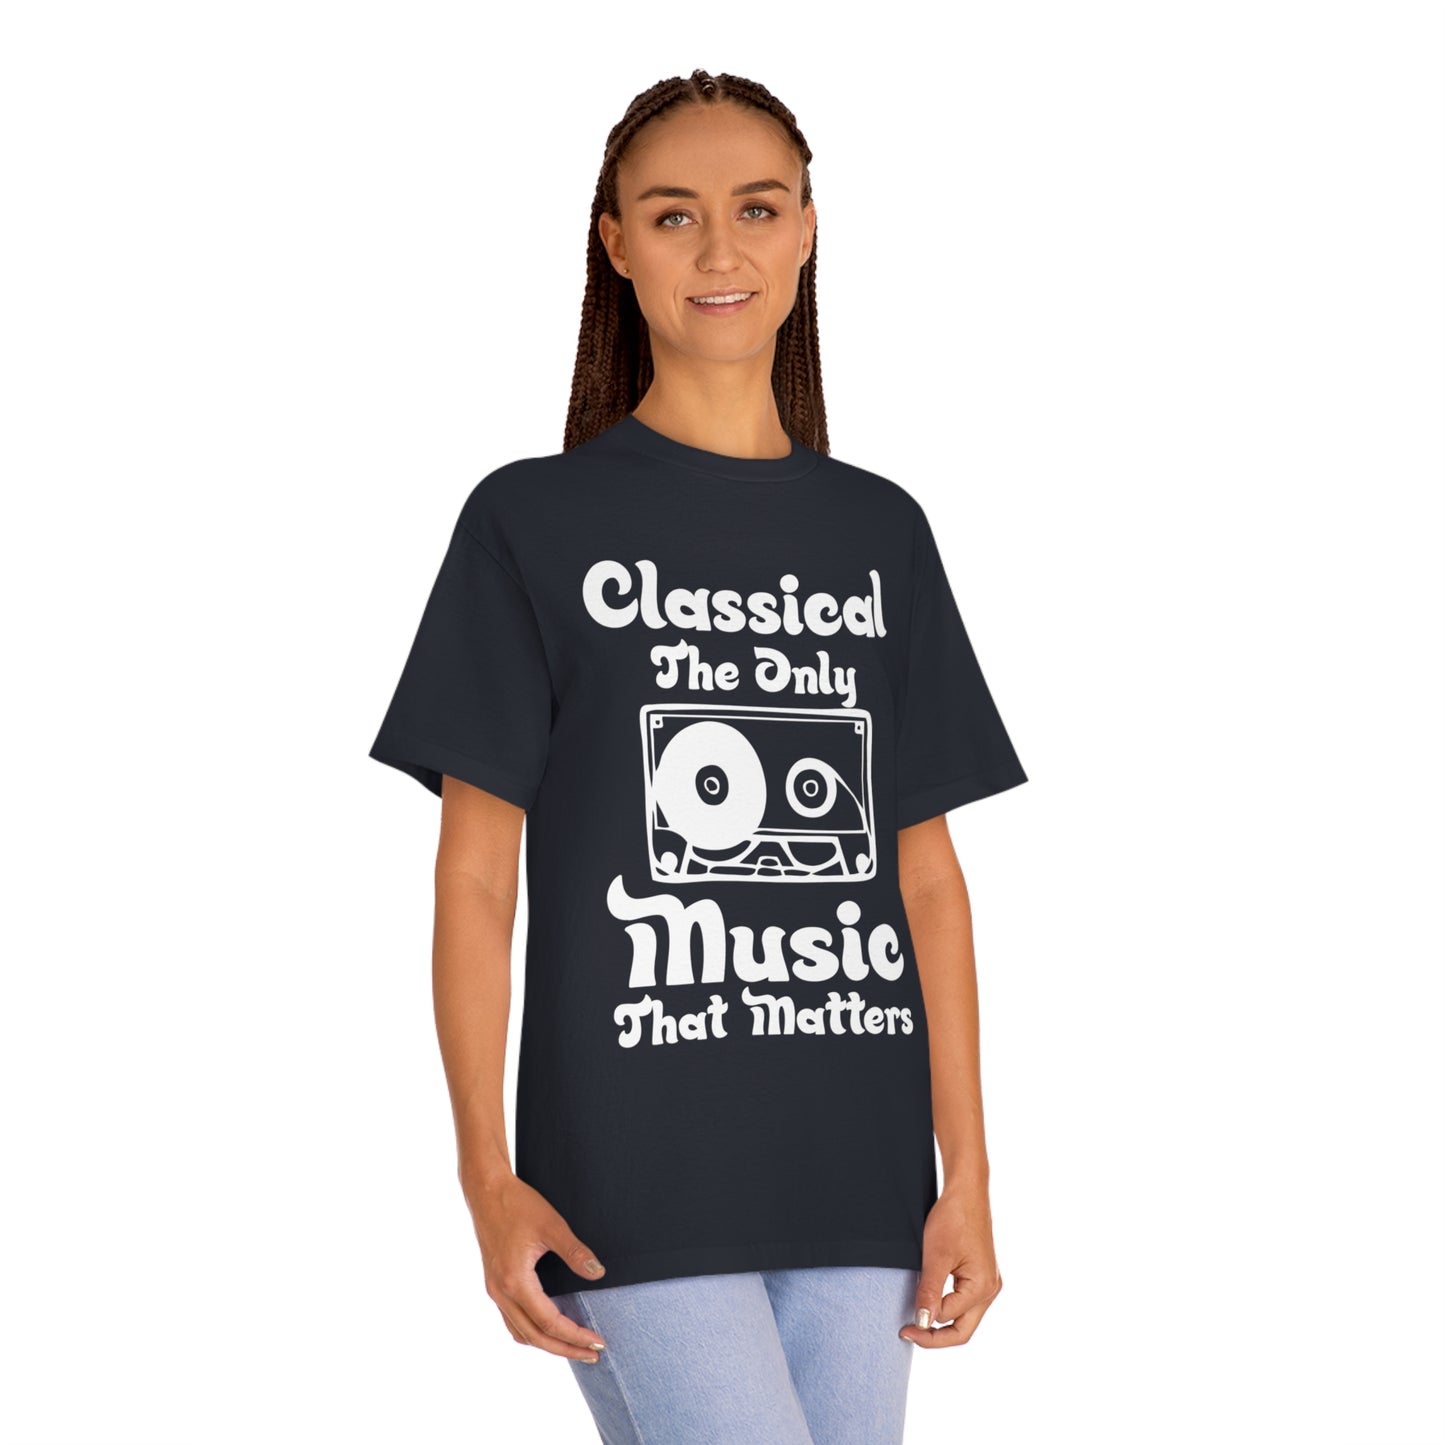 Classical music Unisex Classic Tee